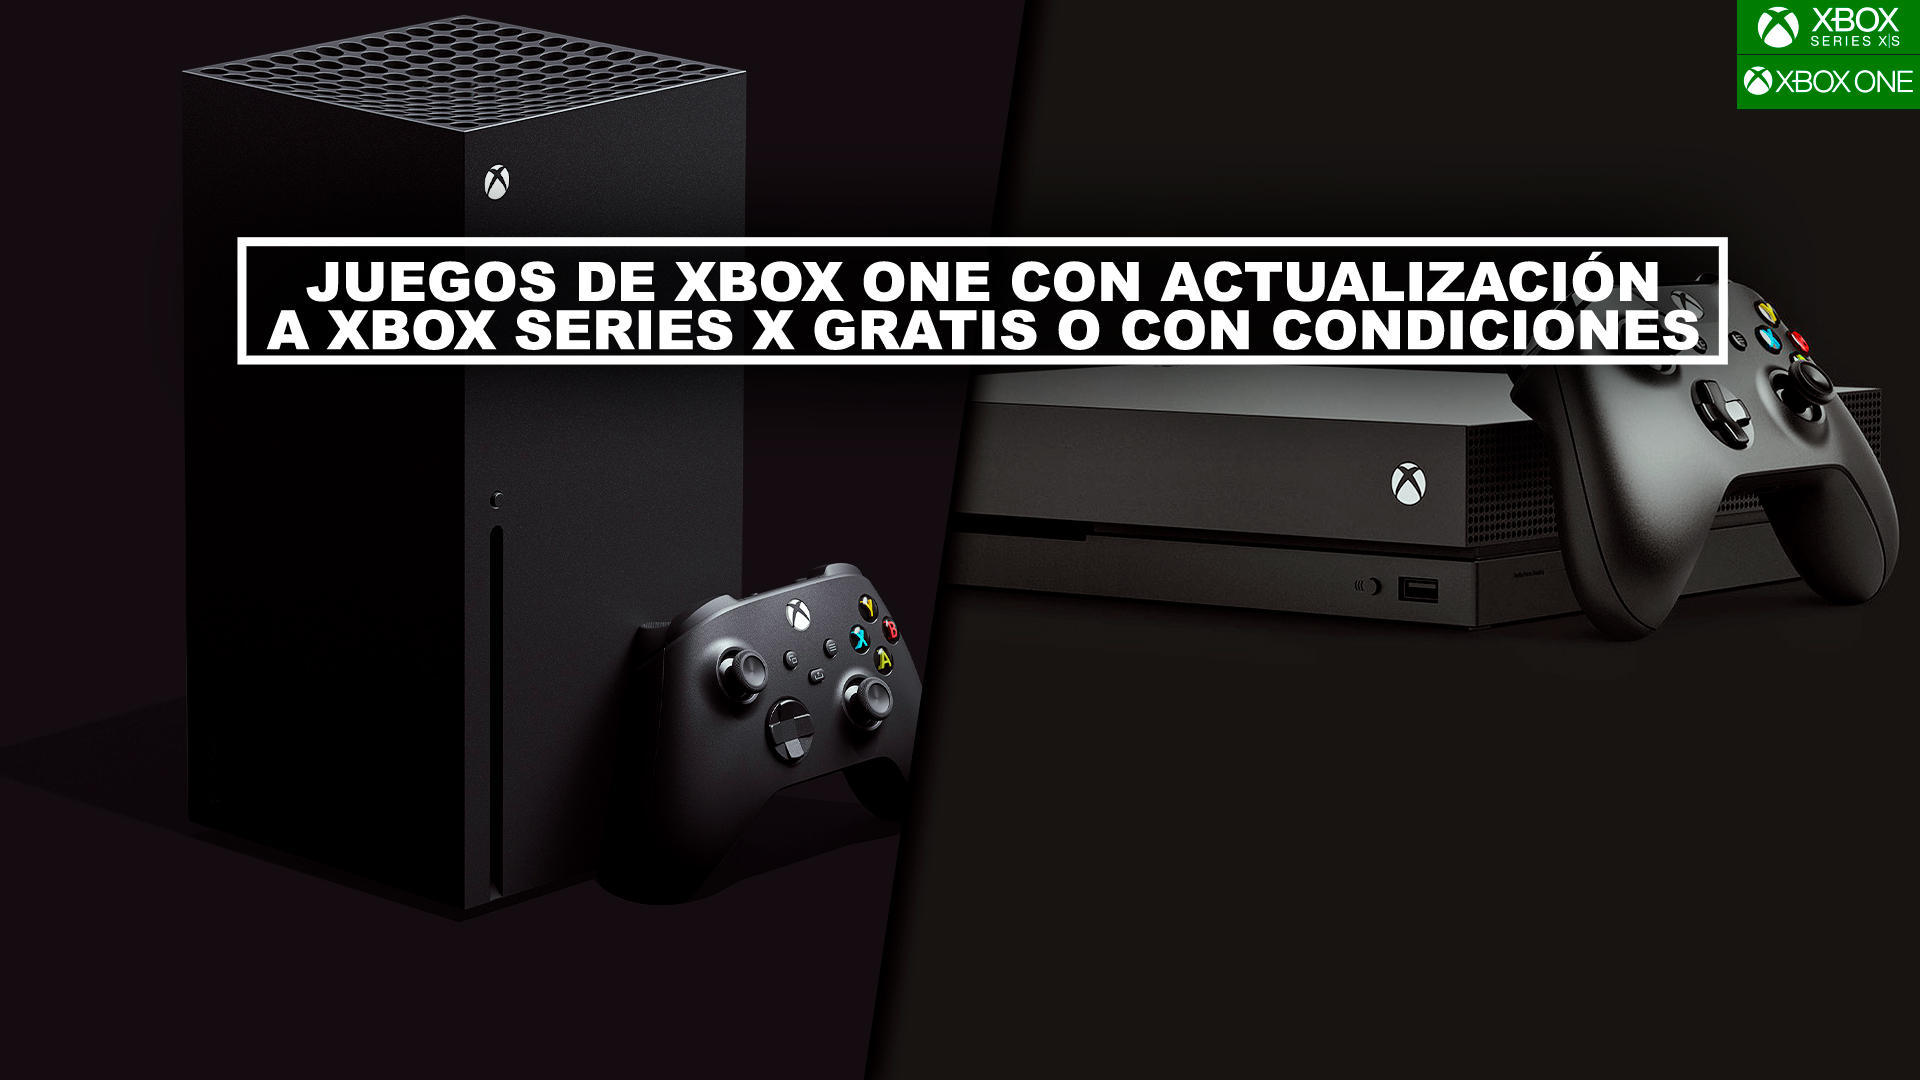 Juegos de Xbox One con actualizacin a Xbox Series X gratis (Smart Delivery) o con condiciones